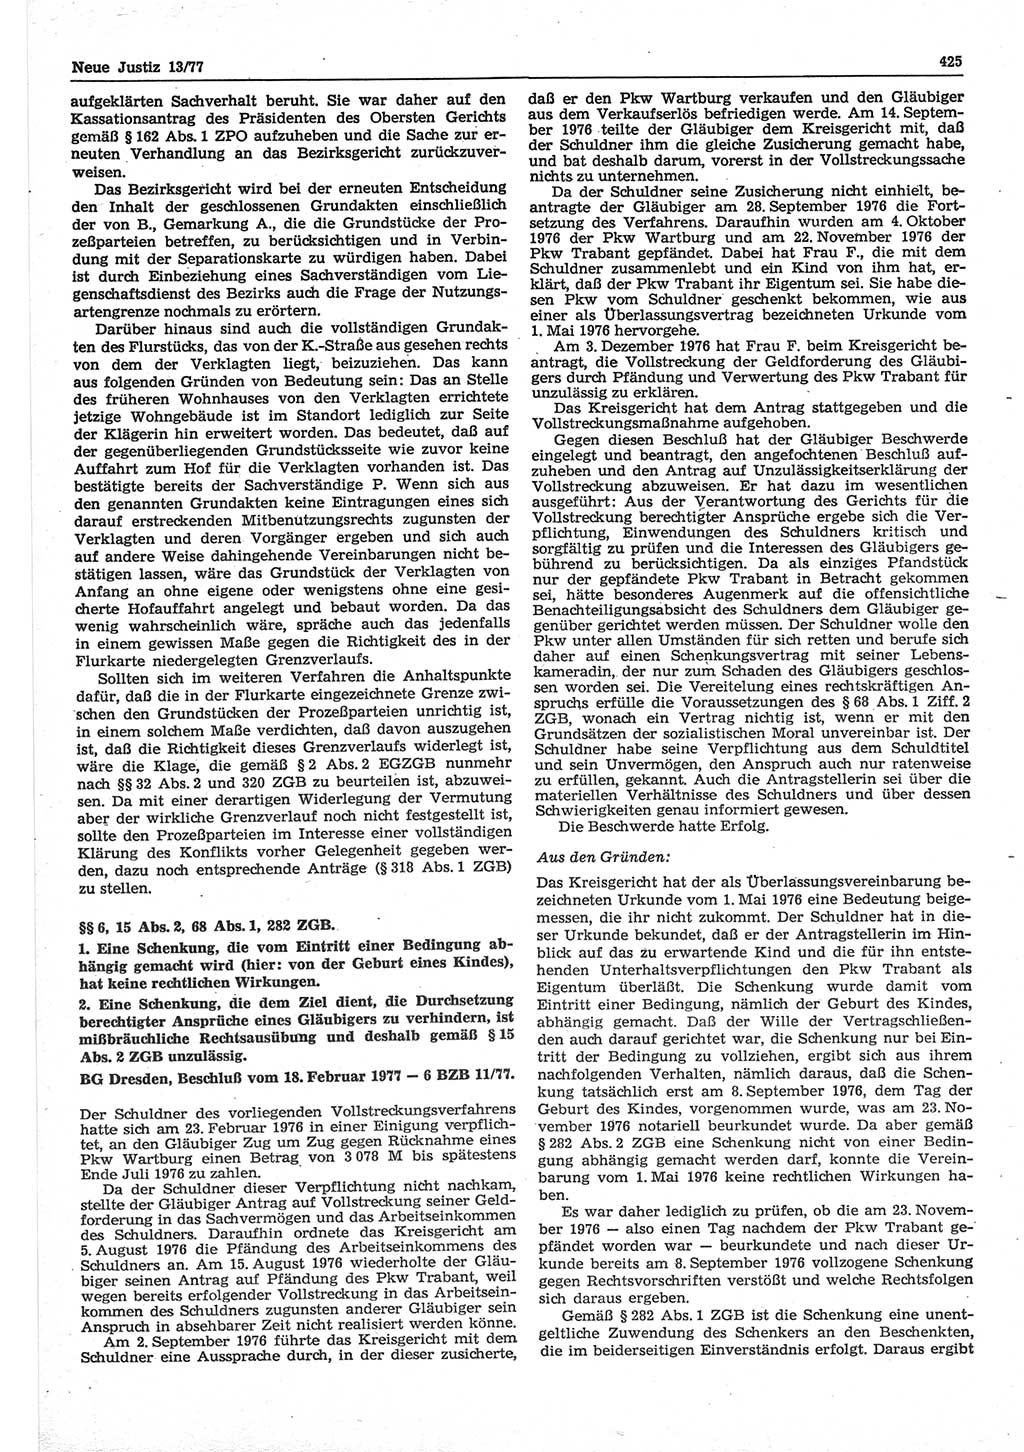 Neue Justiz (NJ), Zeitschrift für Recht und Rechtswissenschaft-Zeitschrift, sozialistisches Recht und Gesetzlichkeit, 31. Jahrgang 1977, Seite 425 (NJ DDR 1977, S. 425)